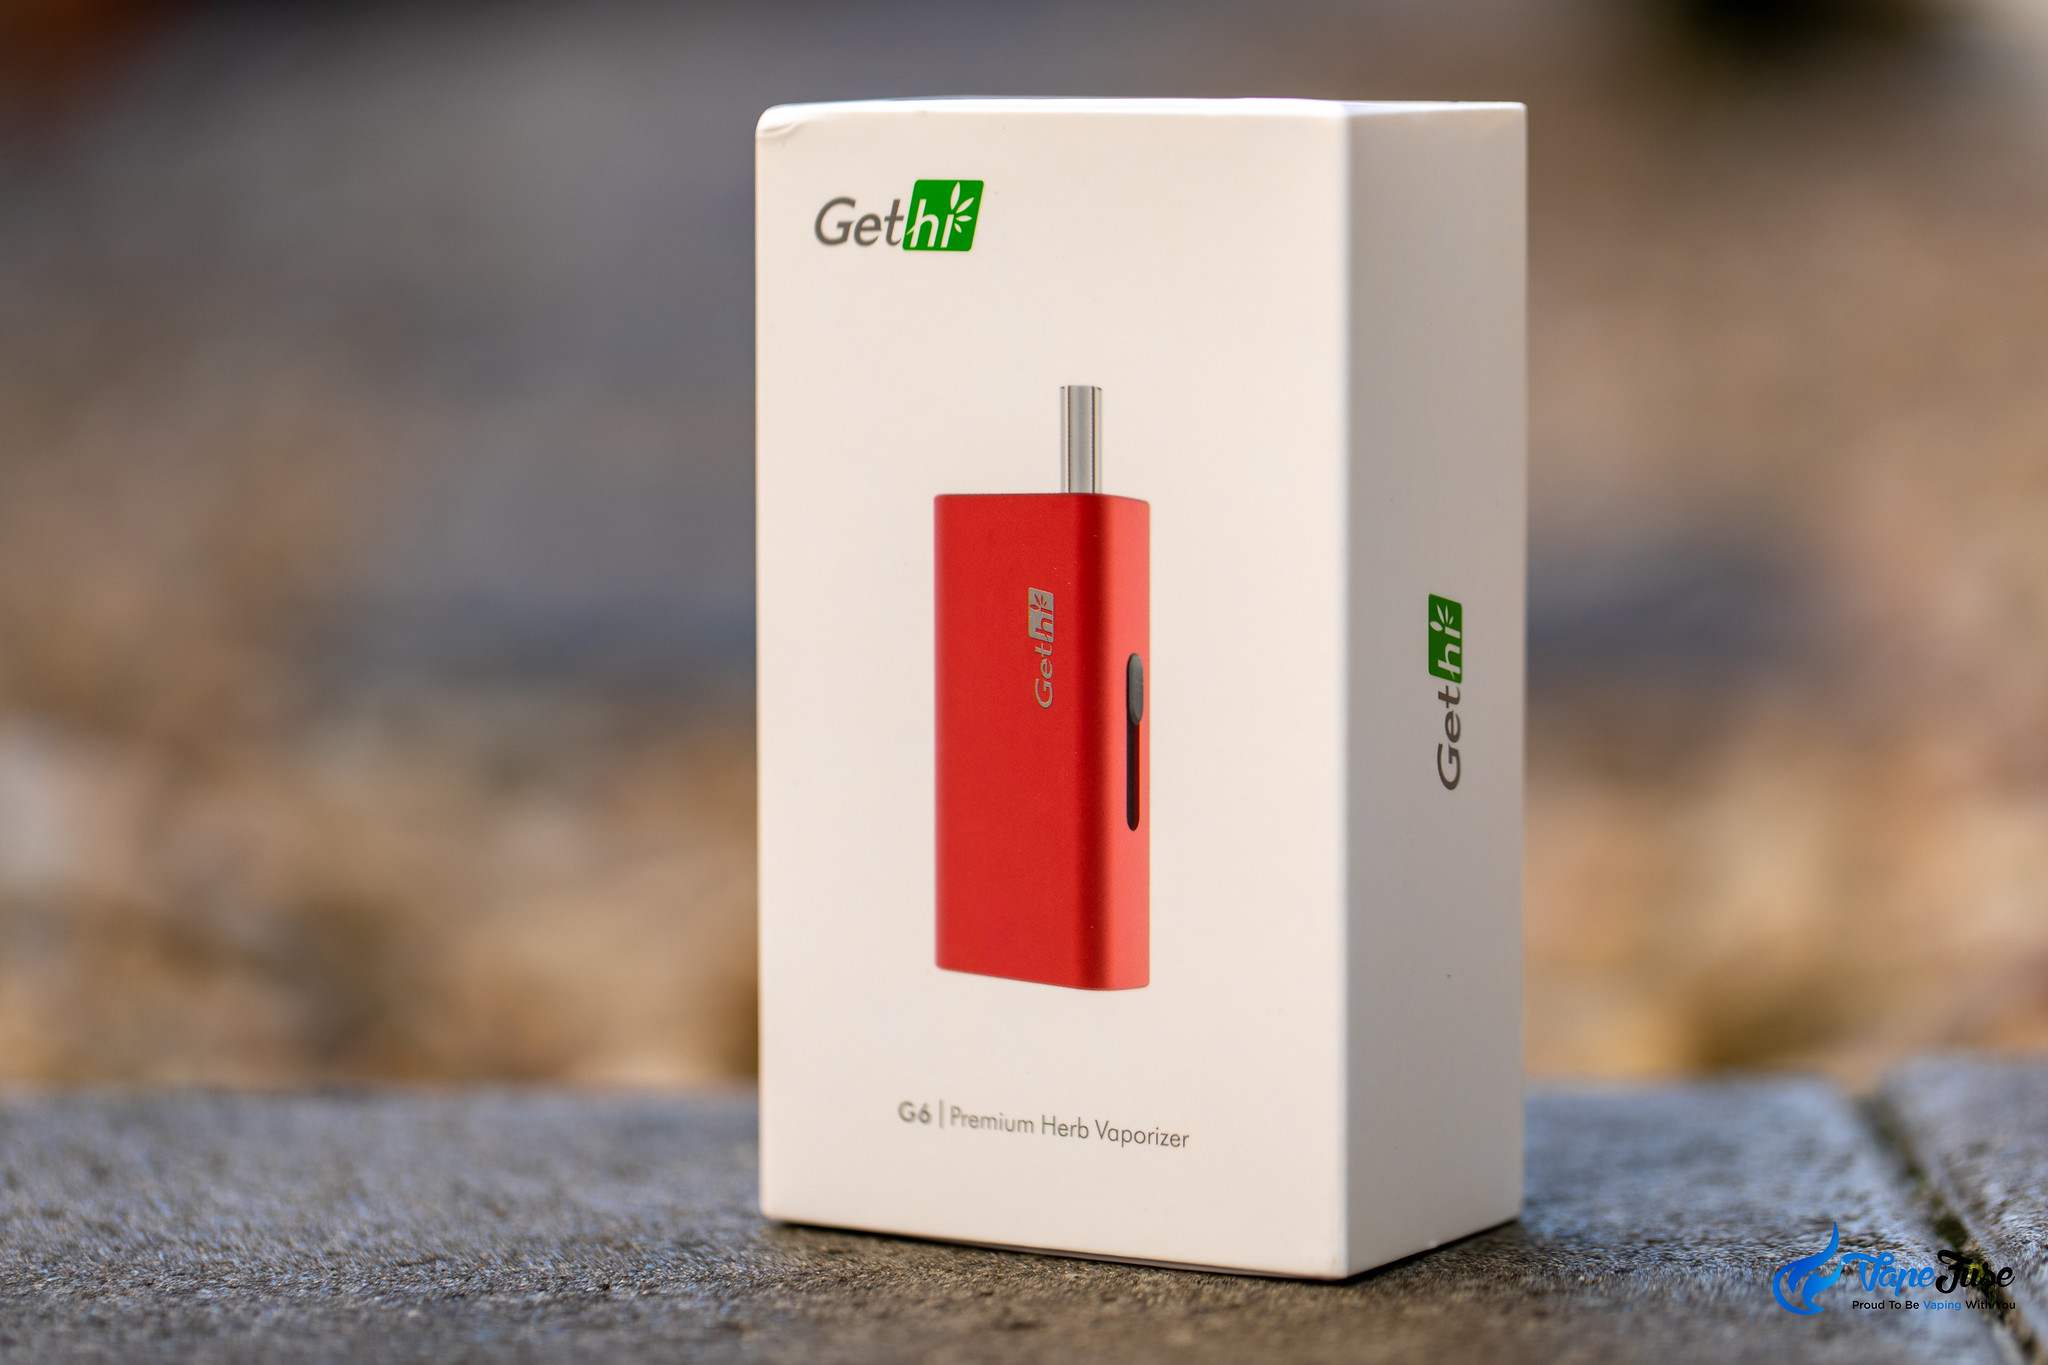 Gethi G6 Dry Herb Vaporizer Box